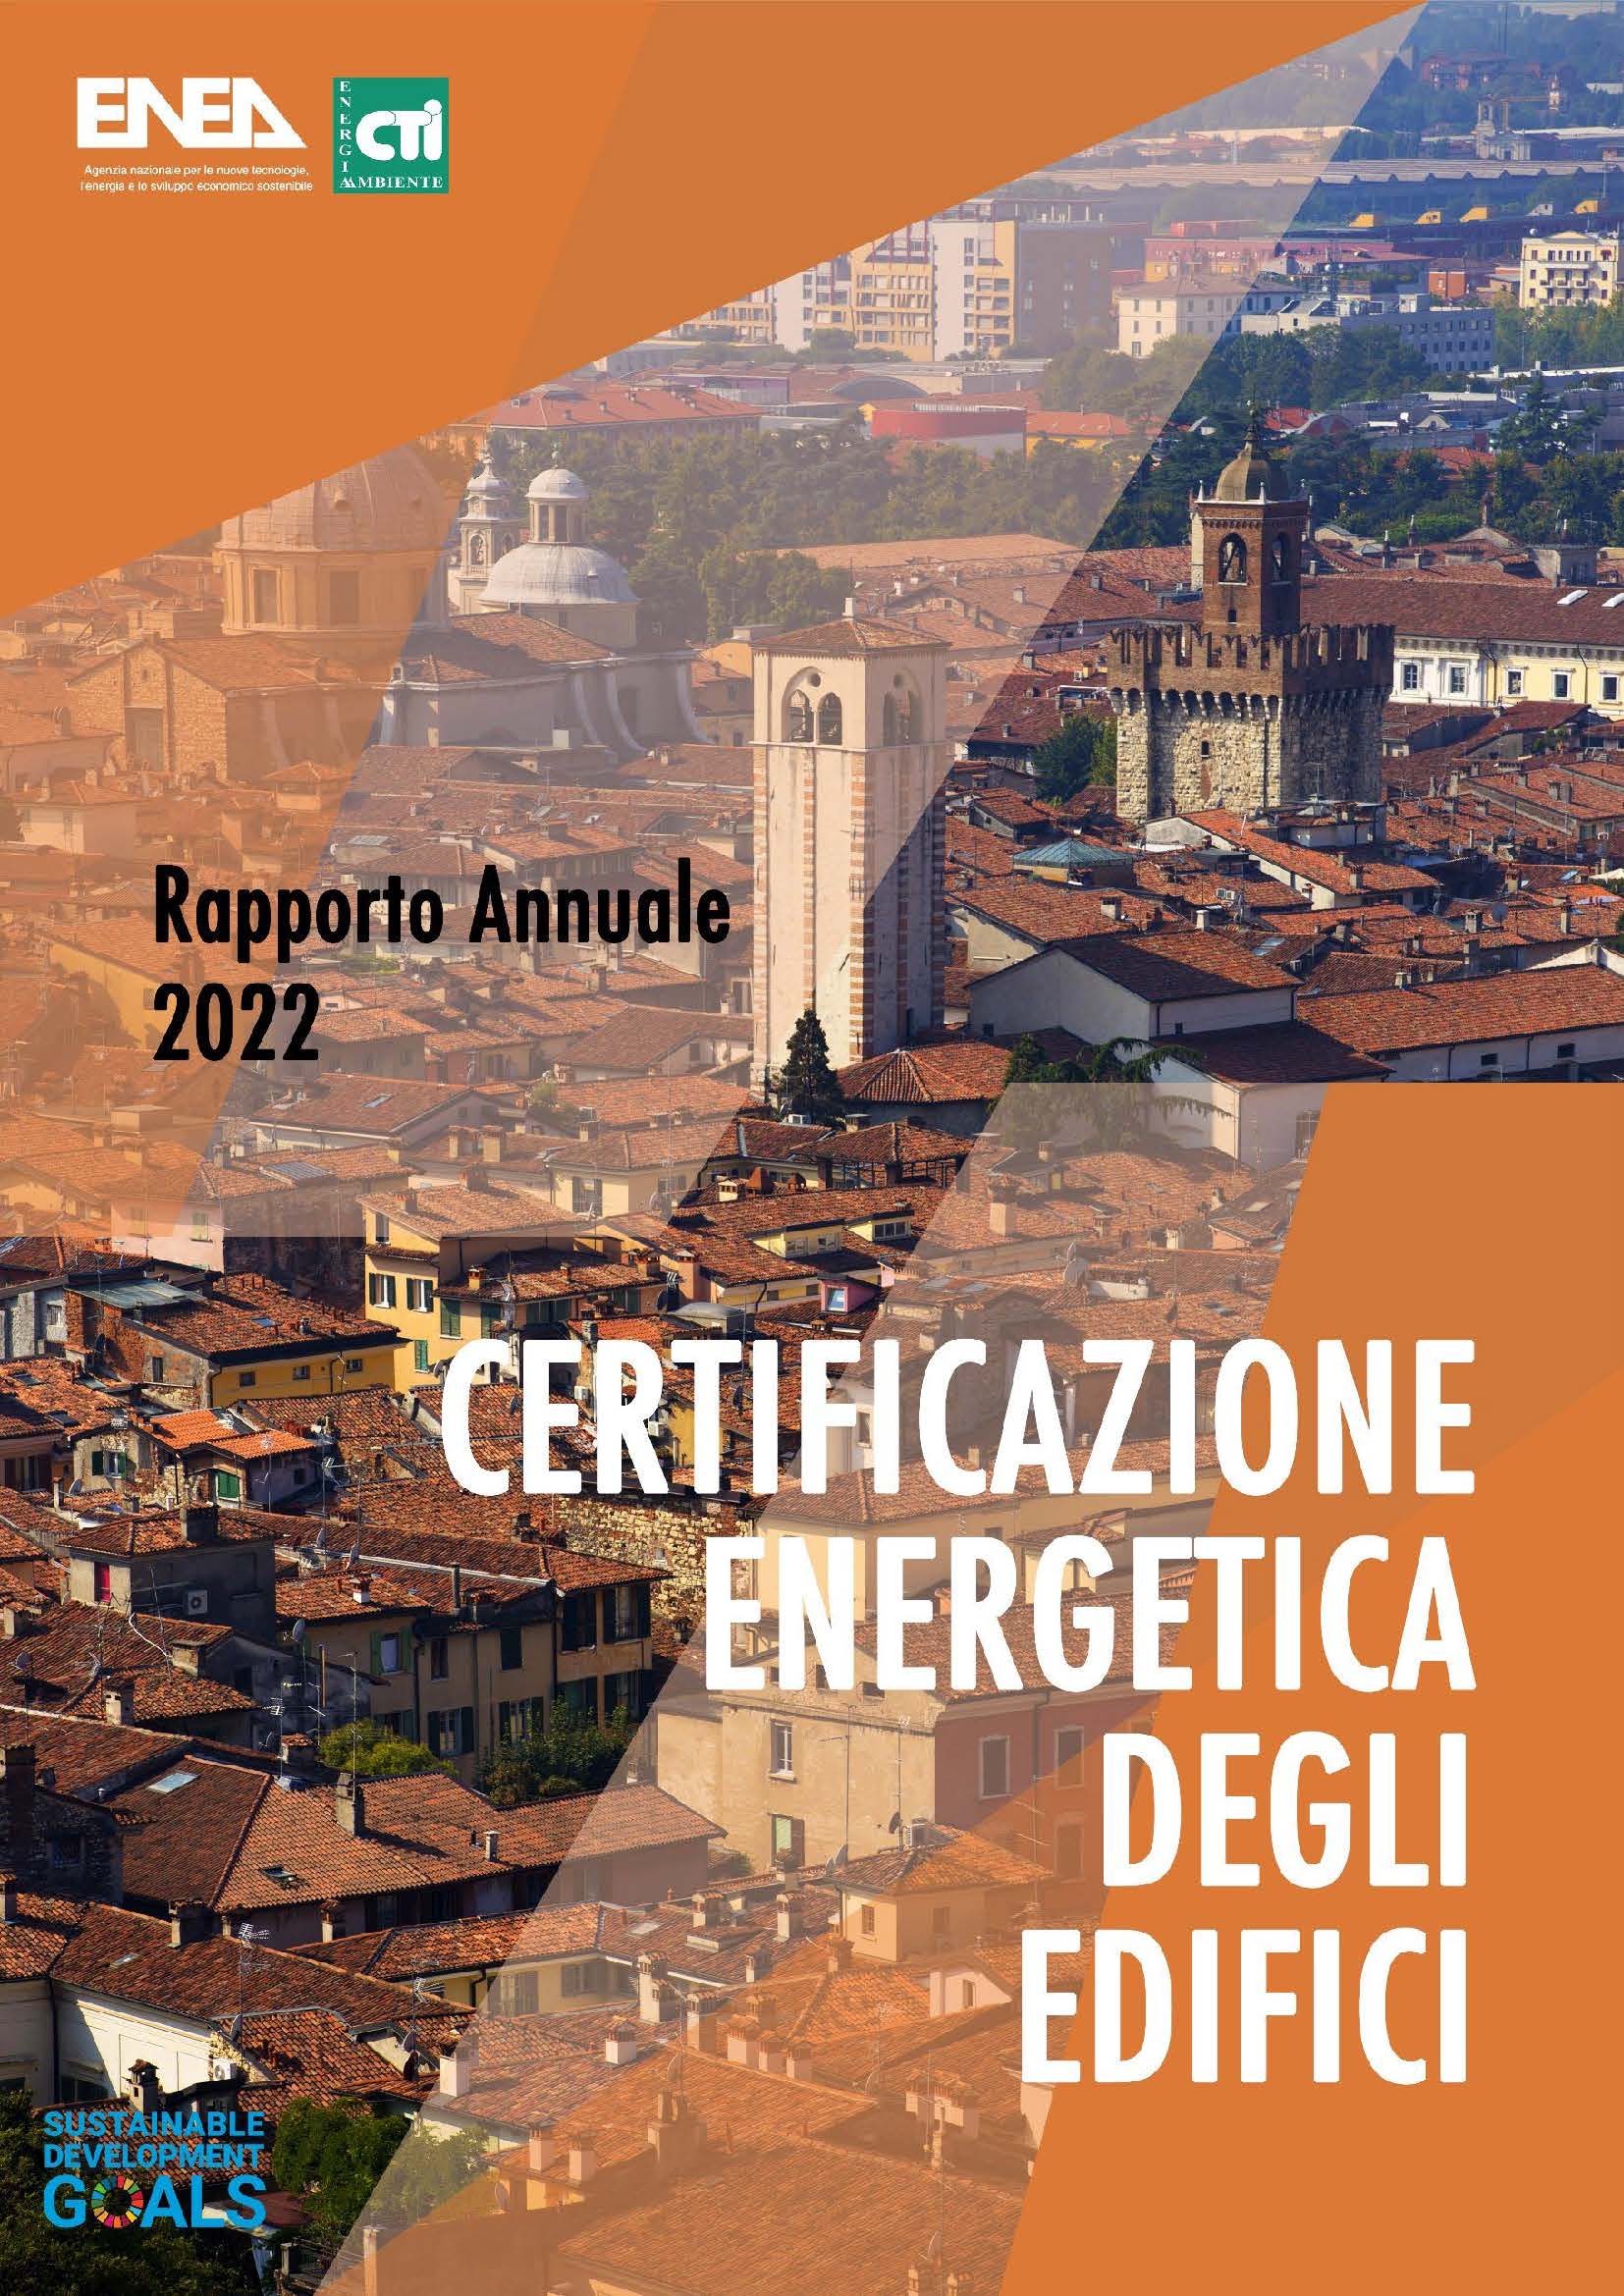 Copertina della terza edizione del Rapporto annuale sulla Certificazione Energetica degli Edifici, risultato della collaborazione tra ENEA e CTI 